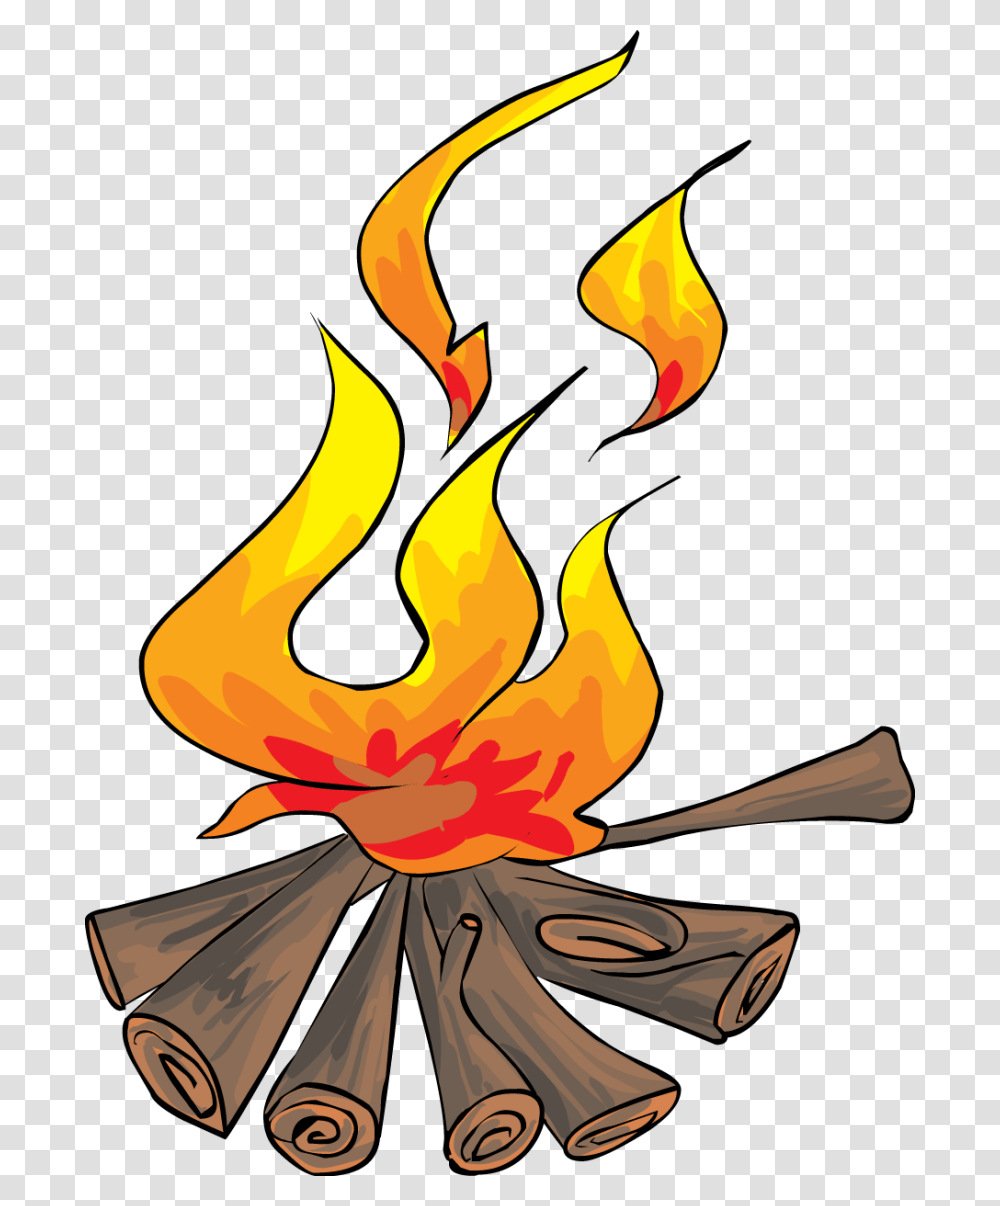 Black And White Cartoon Smores, Fire, Flame, Bonfire, Light Transparent Png